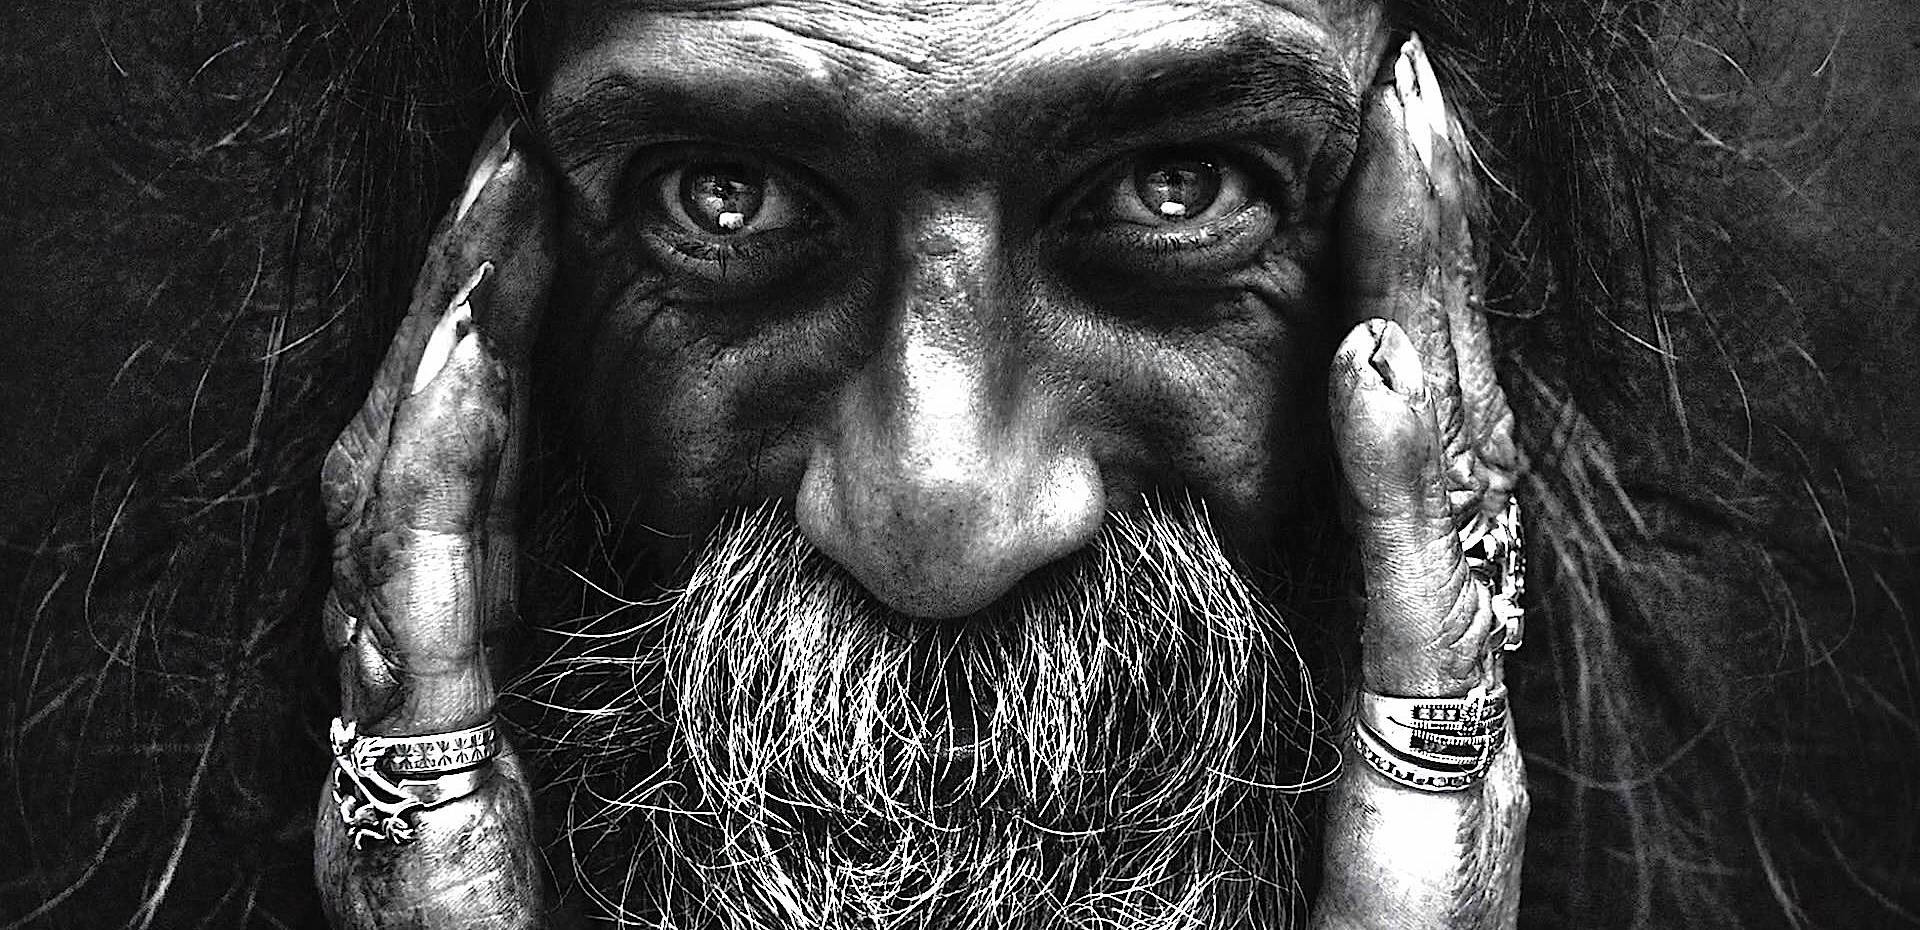 Силно емоционални портрети на бездомни хора от Lee Jeffries